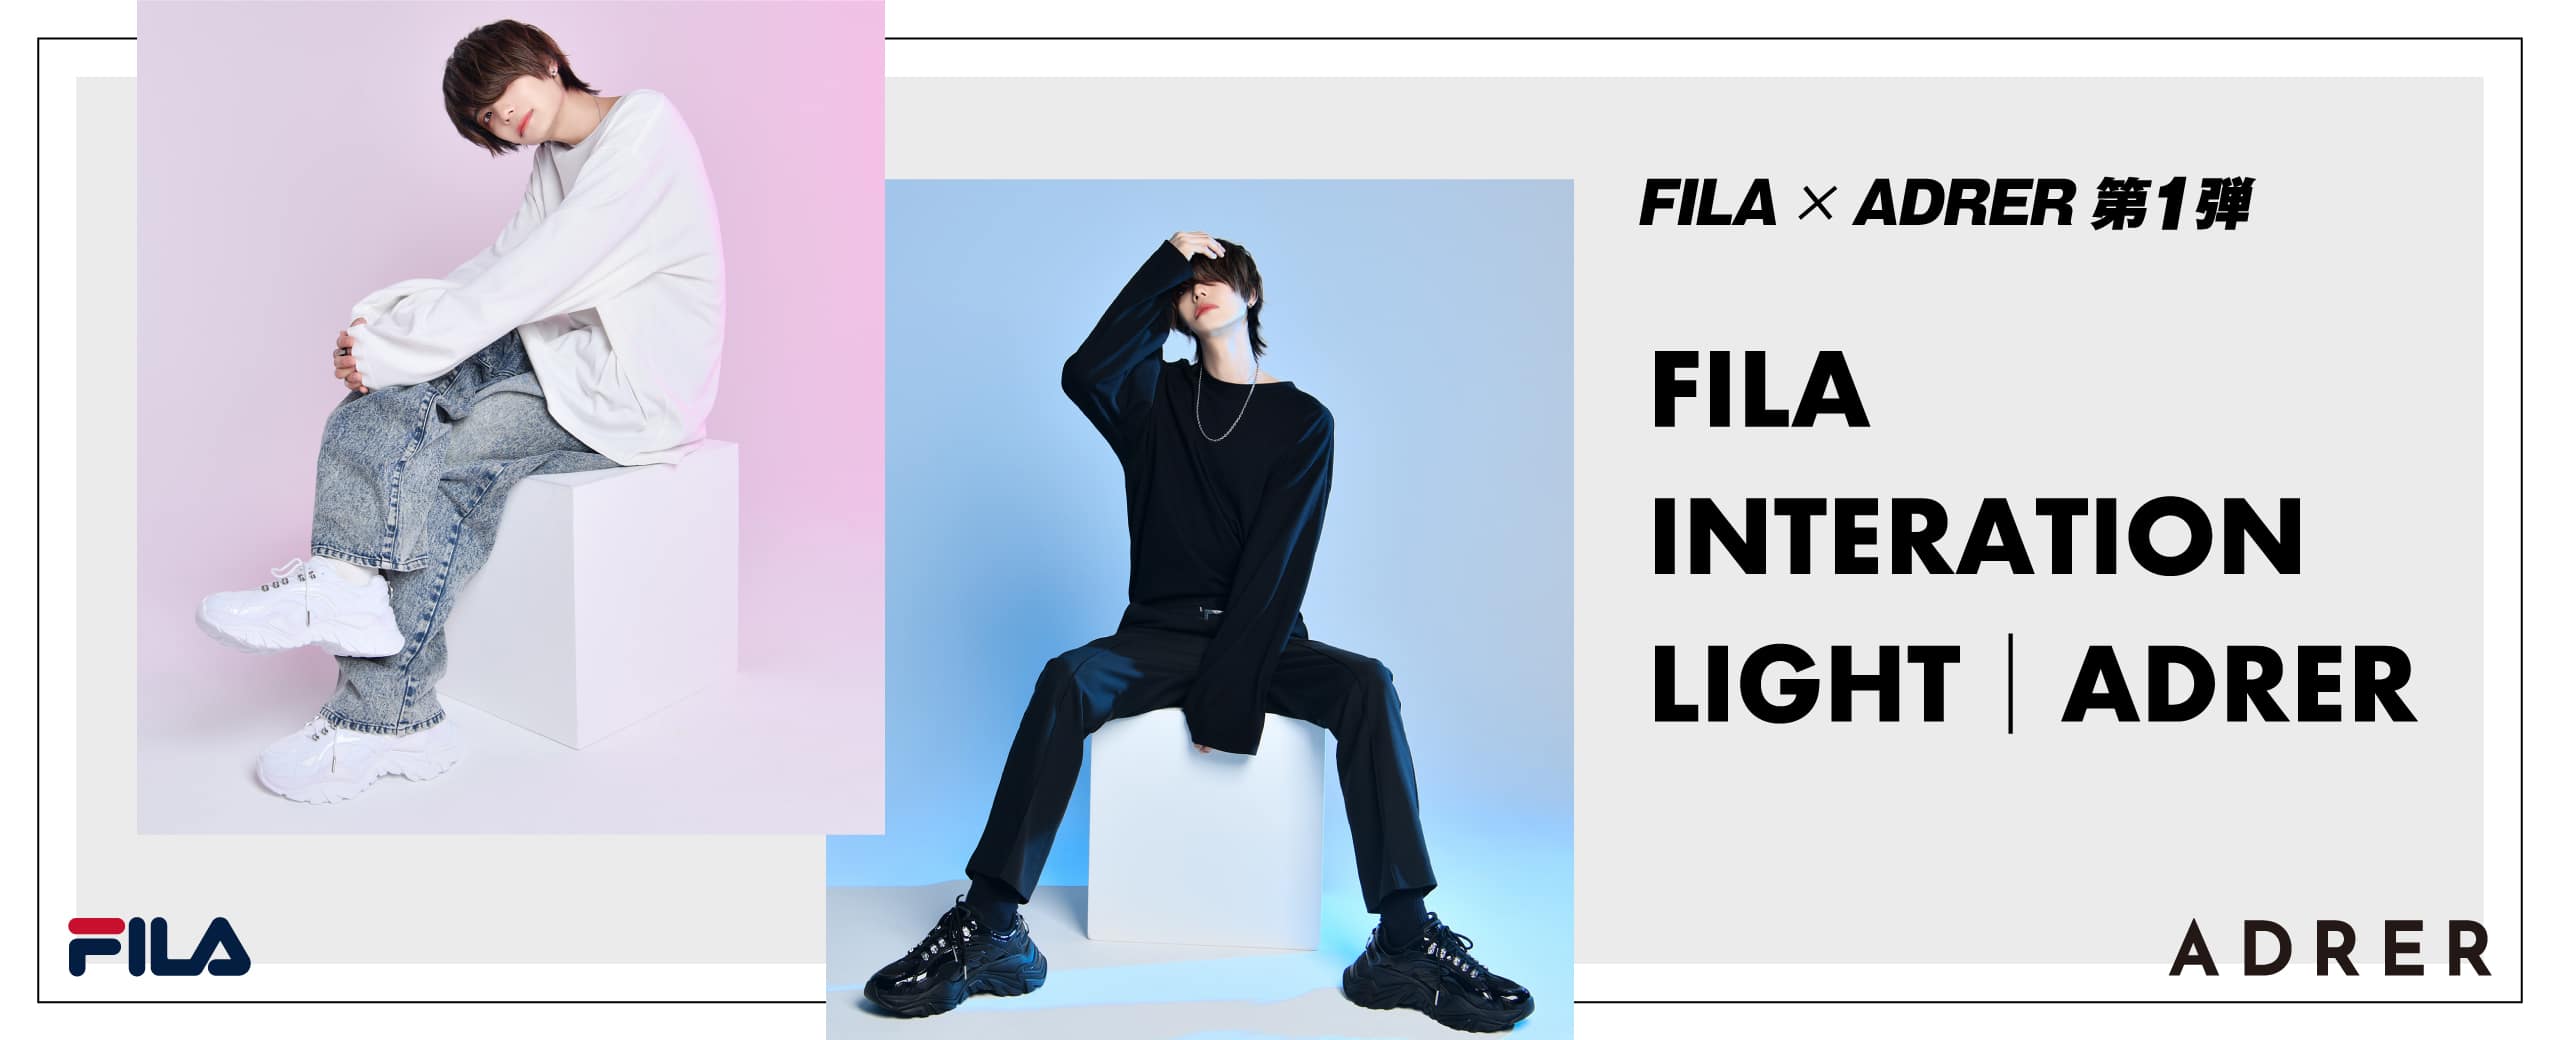 "FILA × ADRER INTERATION LIGHT"